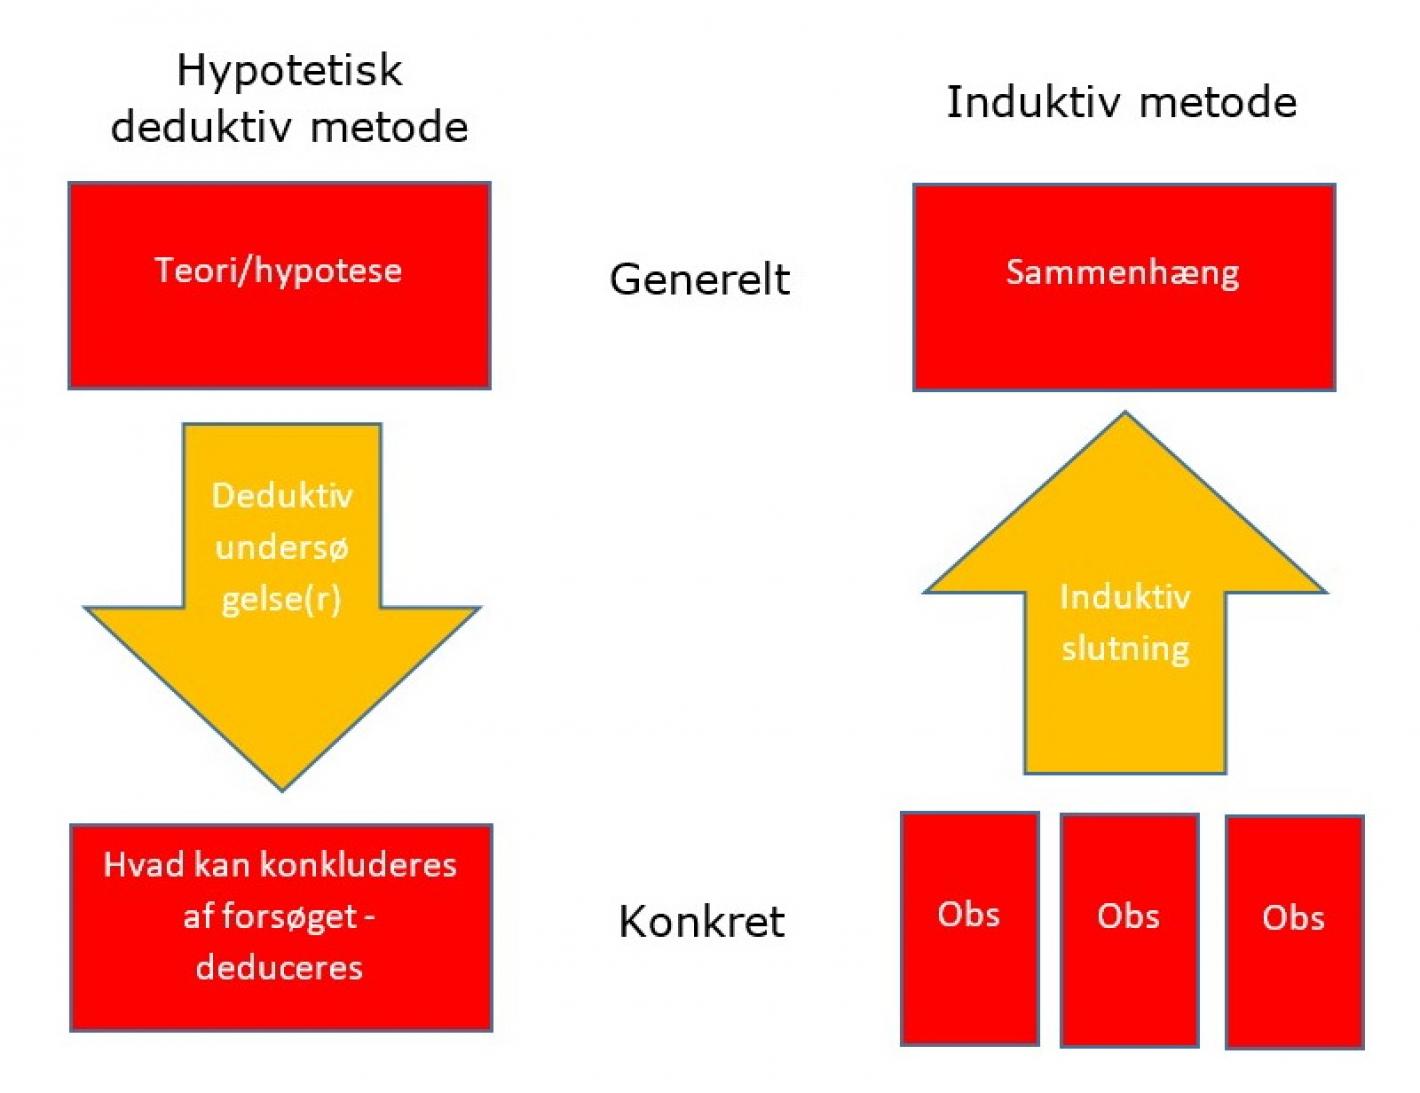 Model over den hypotetisk deduktive metode og den induktive metode